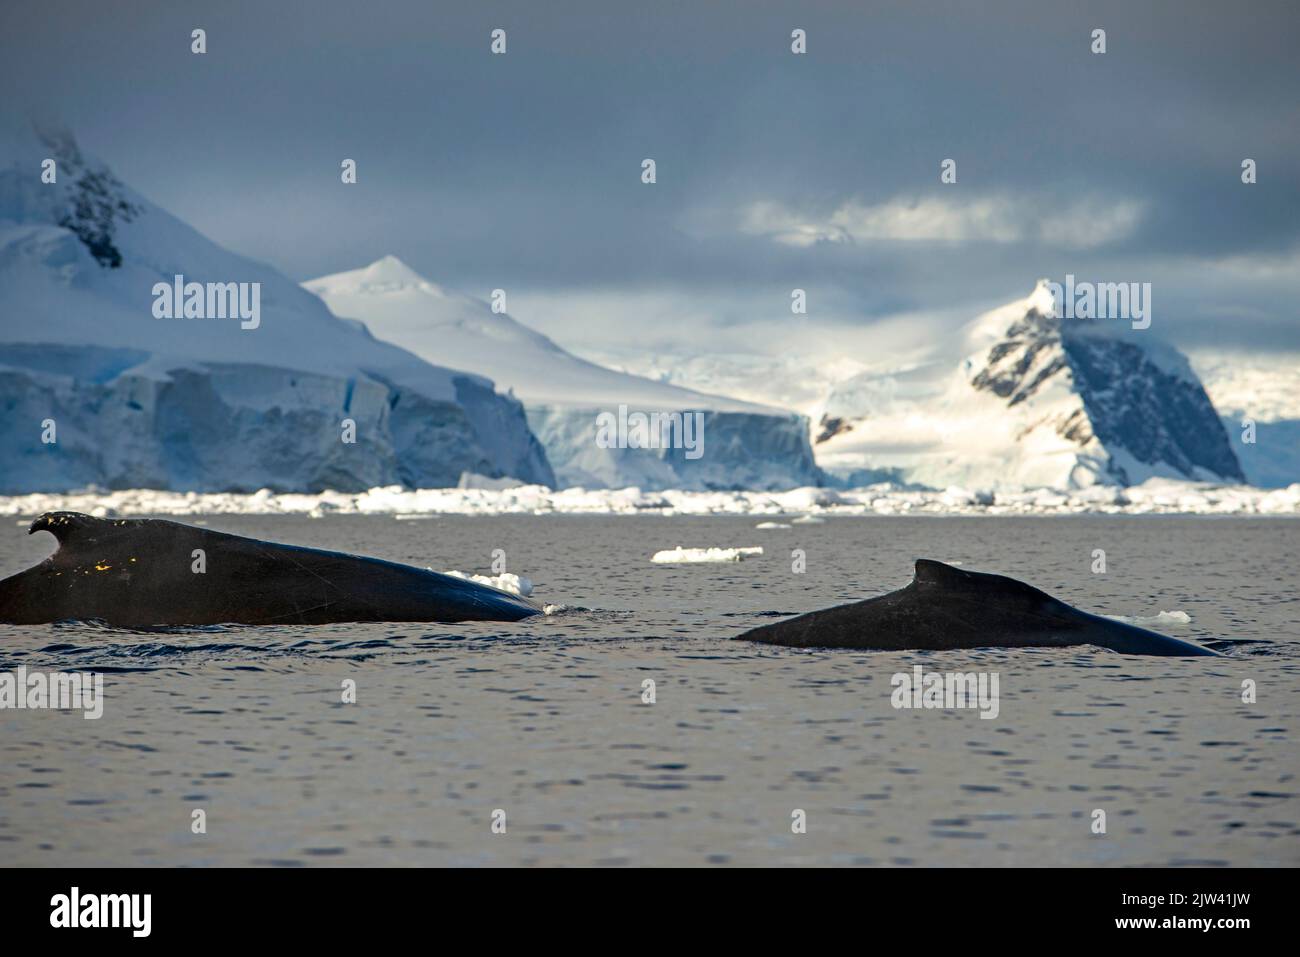 Baleine à bosse adulte (Megaptera novaeangliae), plongée sous-marine dans la baie de Wilhelmina, Antarctique, régions polaires. Fusion des pôles. L'Antarctique est le c Banque D'Images